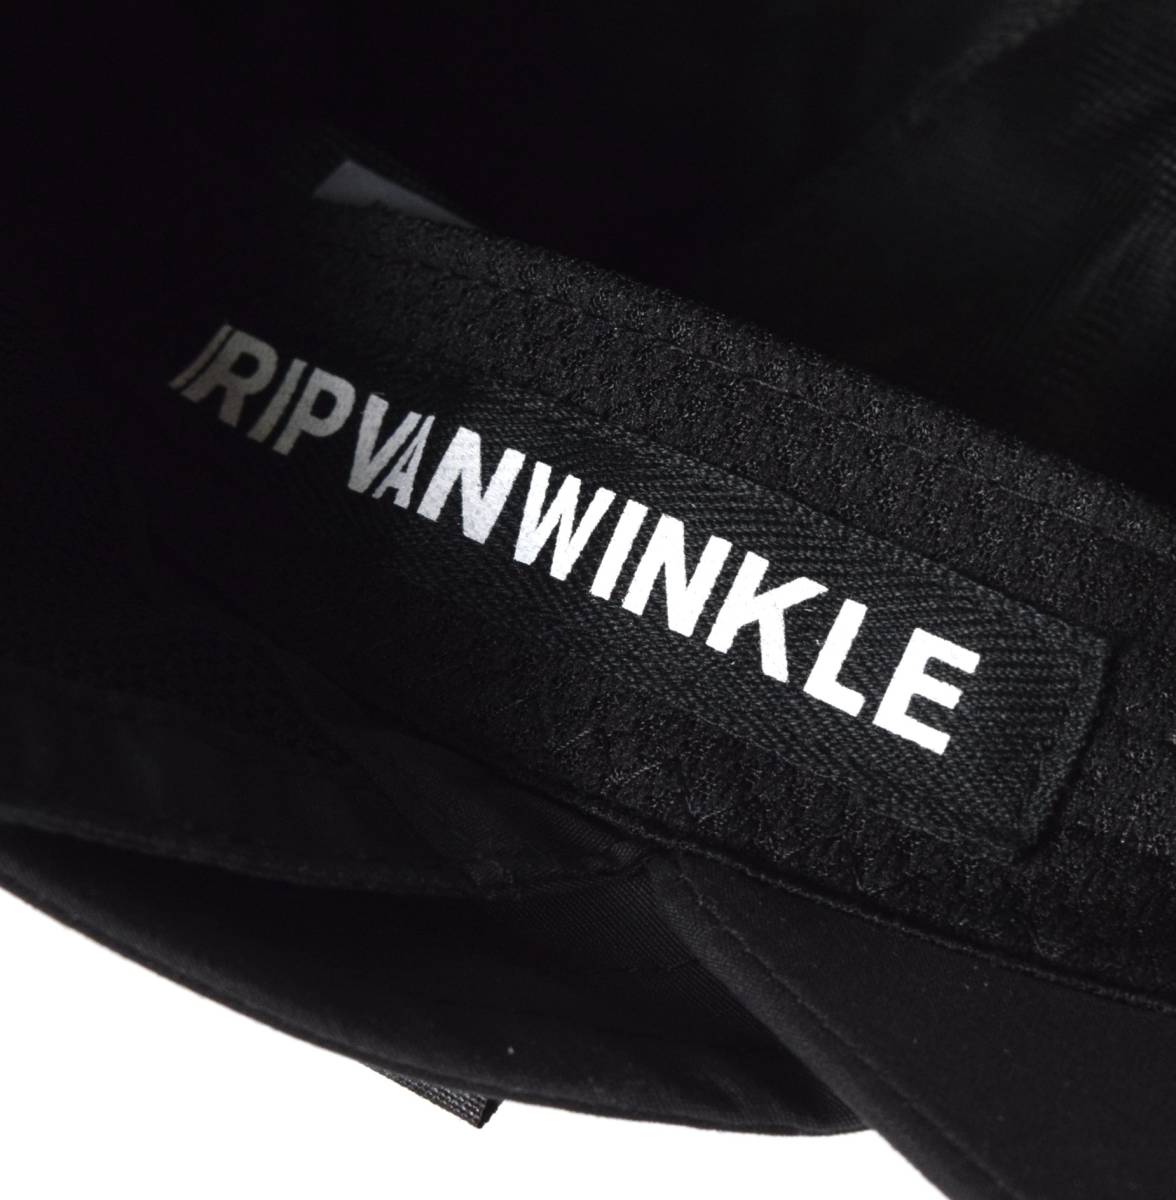  не использовался 22SS RIPVANWINKLE Rip Van Winkle пляж колпак F шляпа черный RW-446